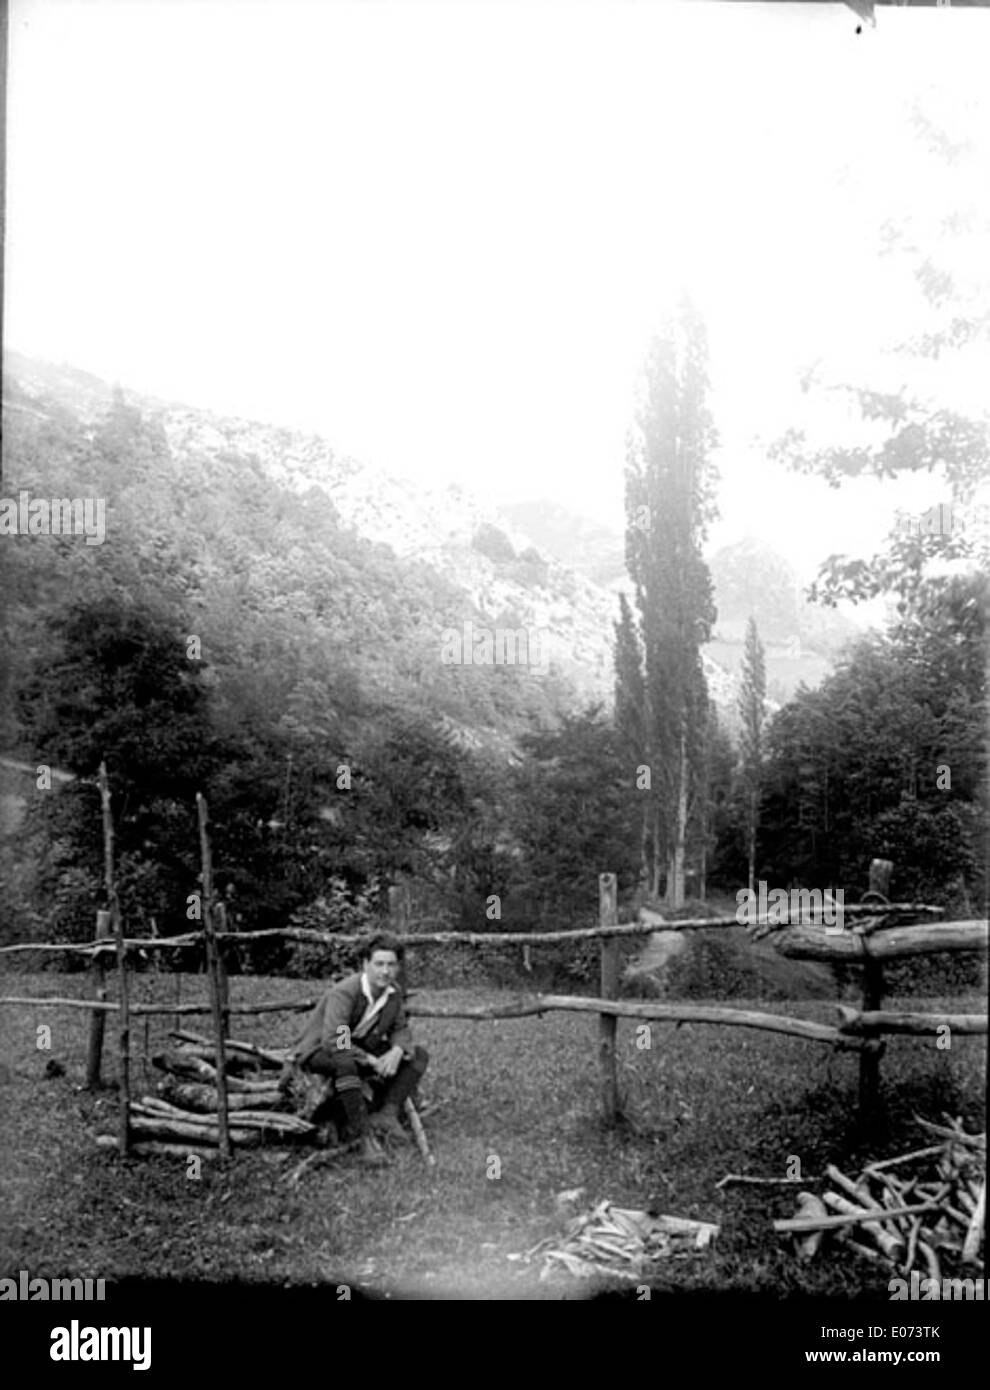 Homme accroupi devant une barrière en bois en constructrion et un tas de bois coupé Stock Photo